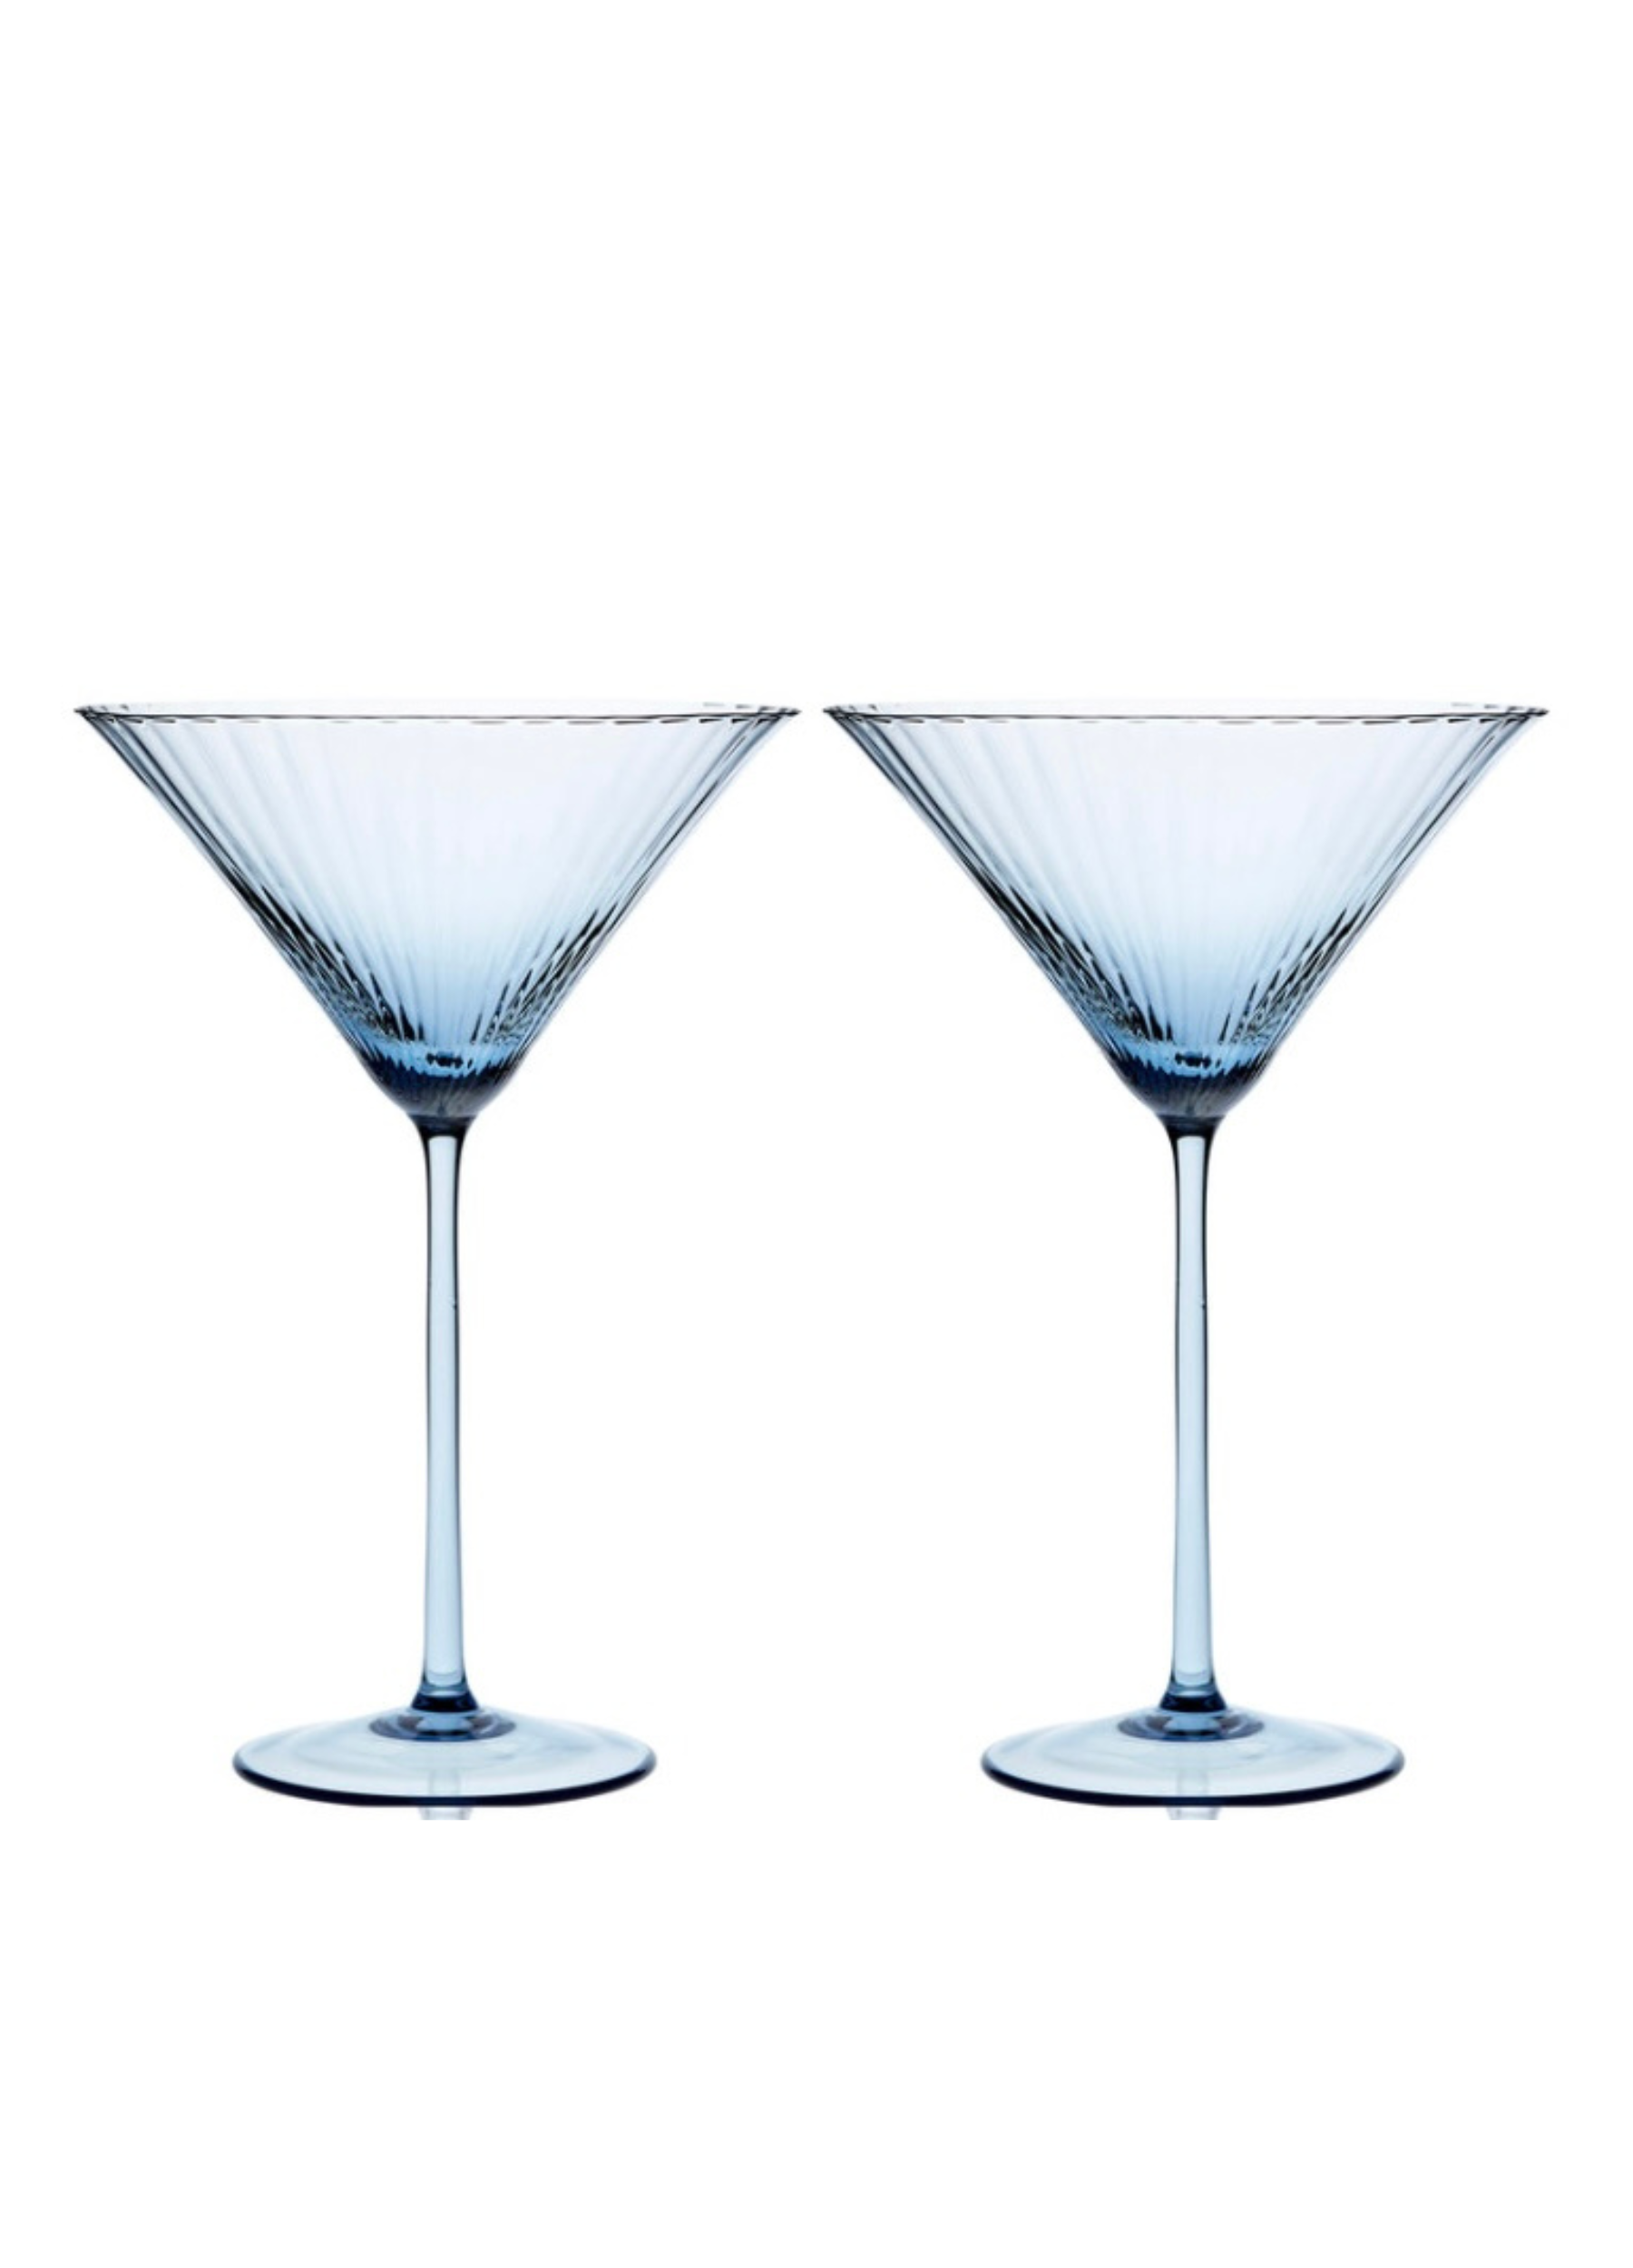 Martini Glass, Blue Rim 15oz Short Stem set of four with 80oz bola pitcher